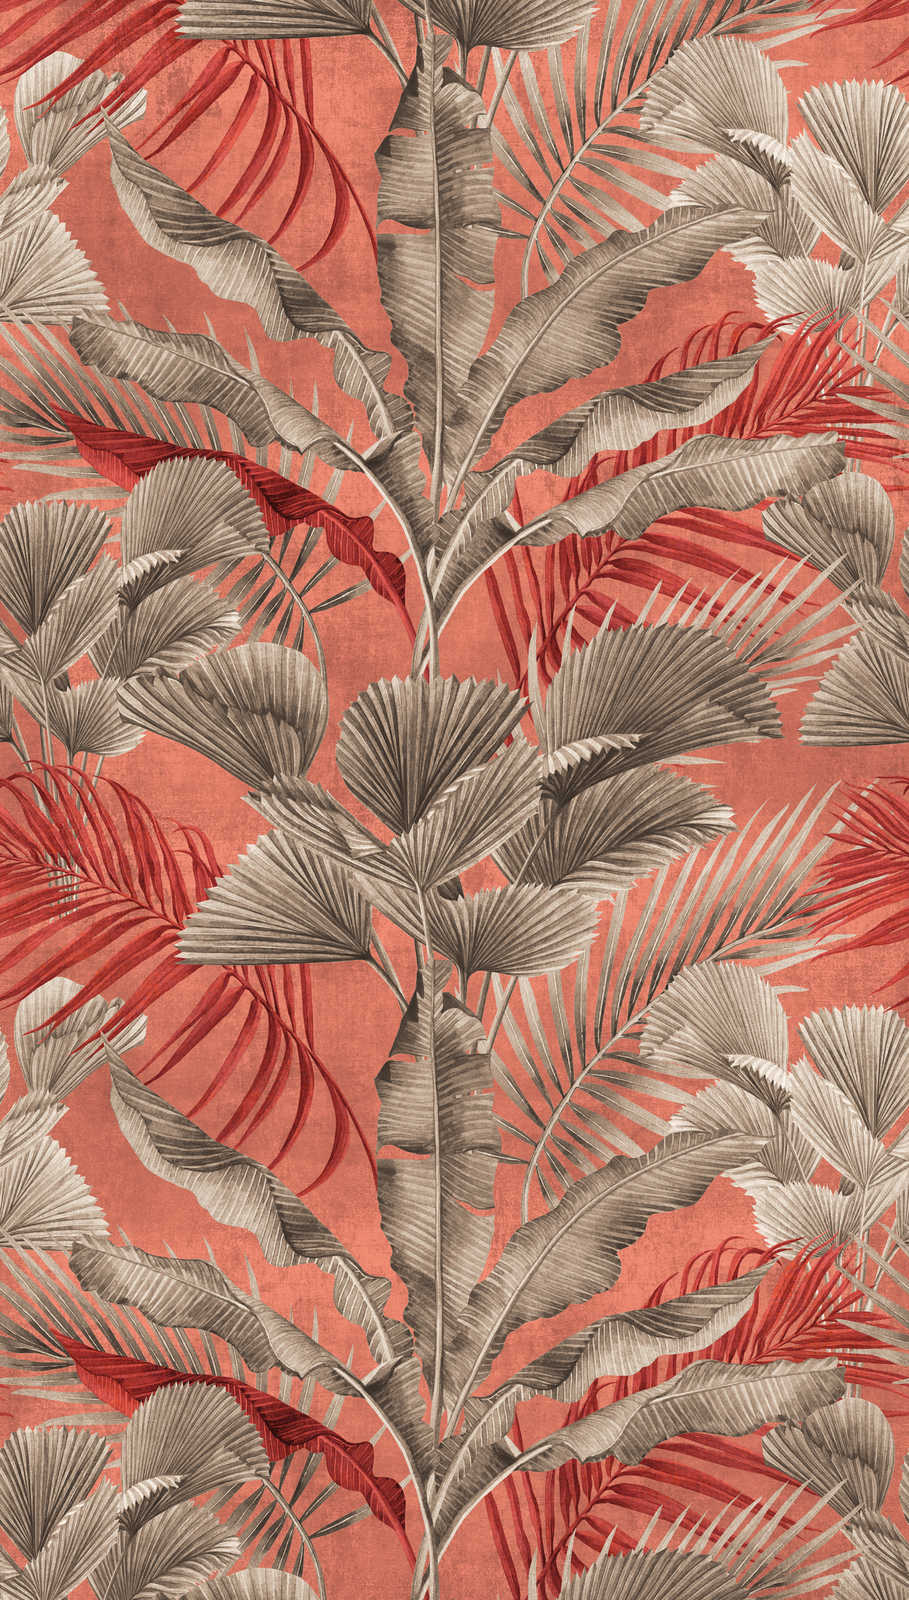             Papel pintado selva con plantas tropicales - rosa, rojo, gris
        